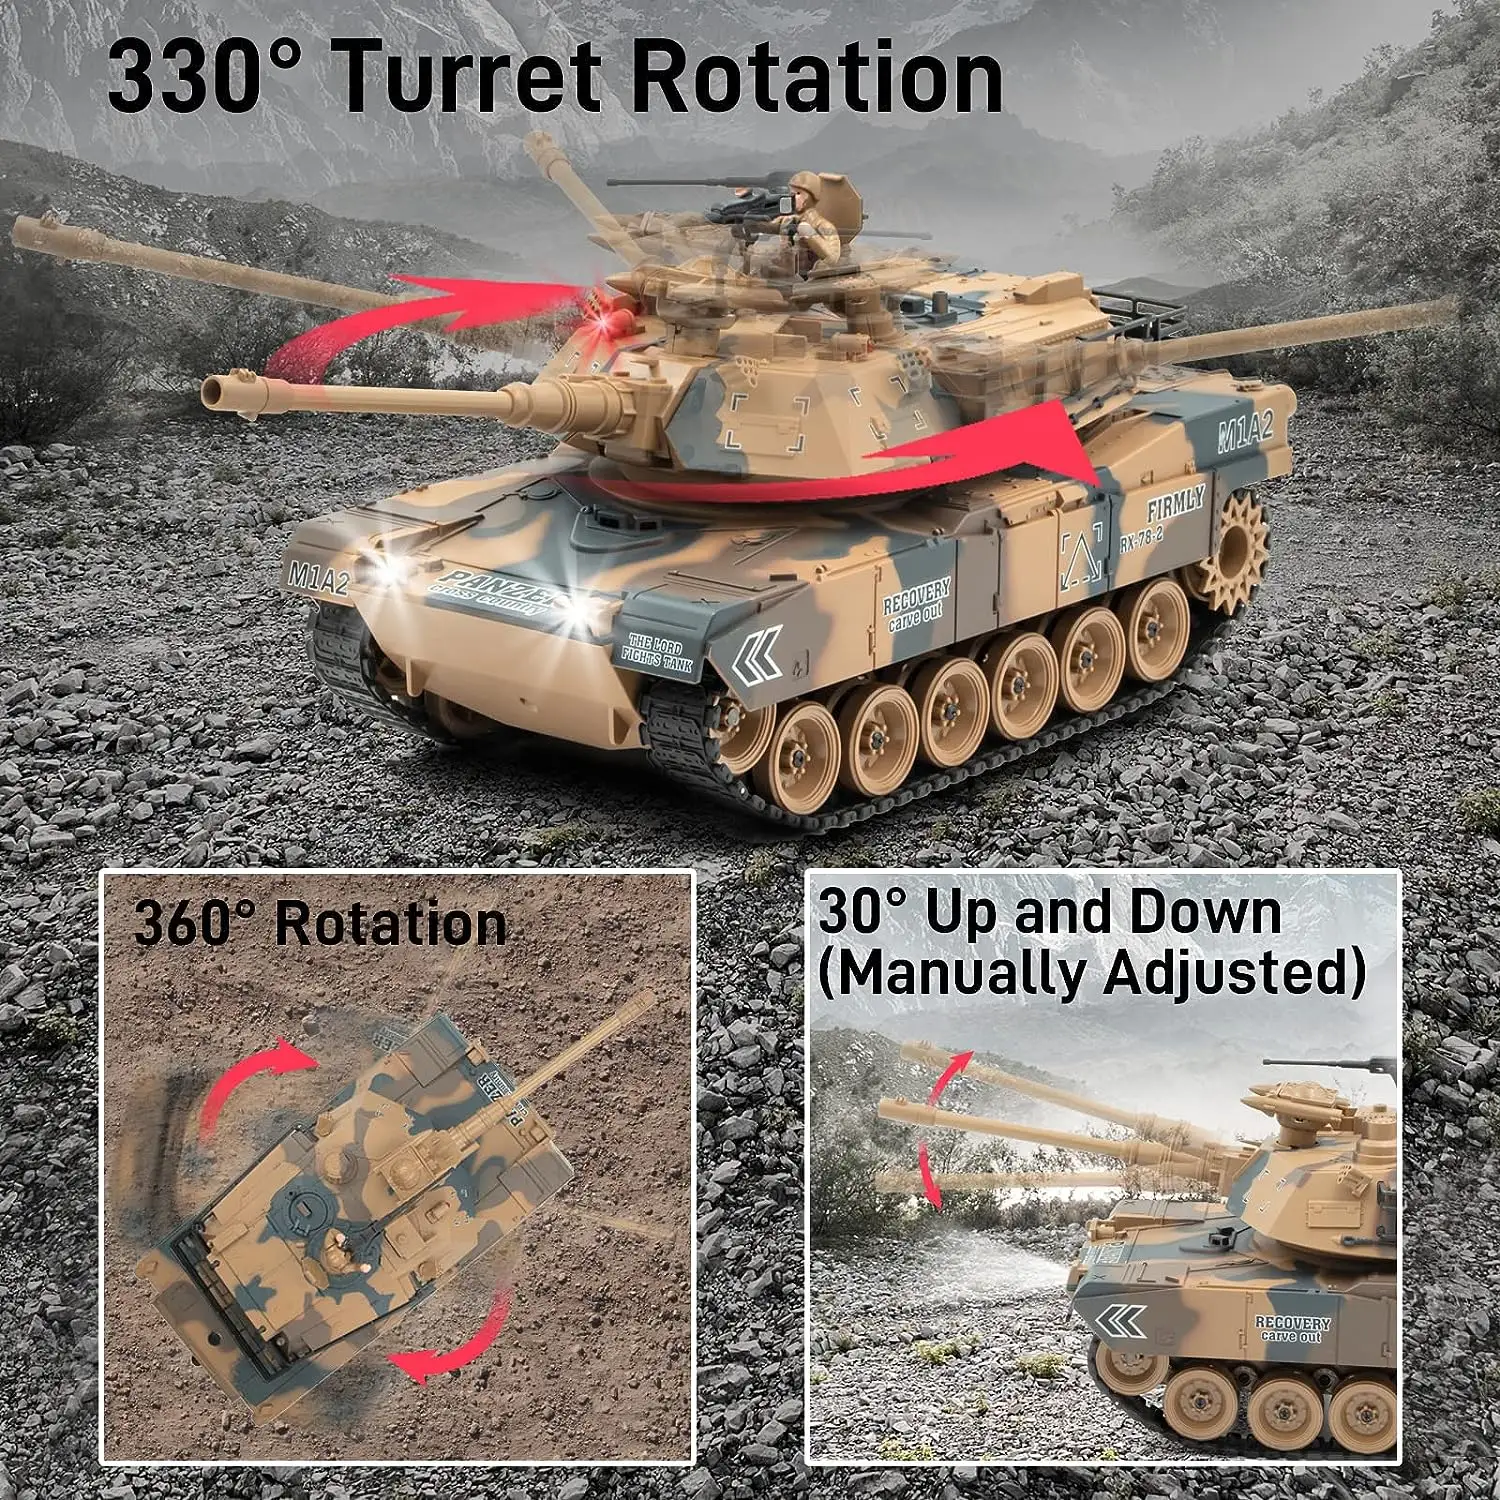 1/18 Hot Selling Abrams Modell Rc Tank mit Rauch geräusch aufnahme All Terrain Fernbedienung Crawler RC Tank Car M1A2 Tik Tok